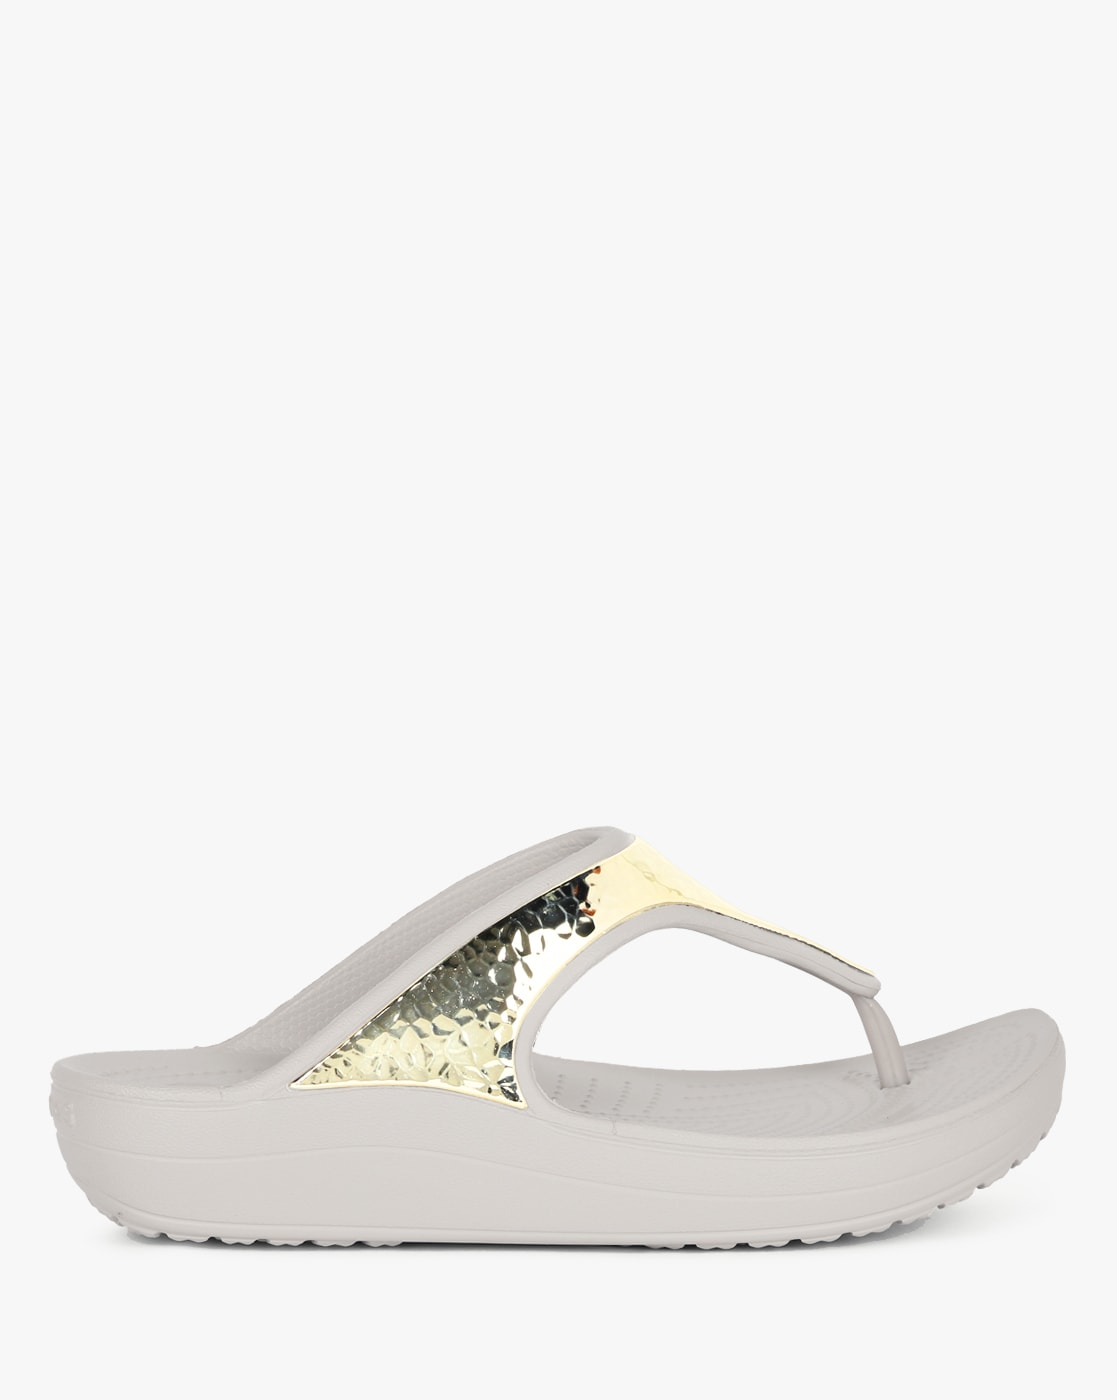 Crocs Women's Boca Strappy Wedge Sandal | Famous Footwear